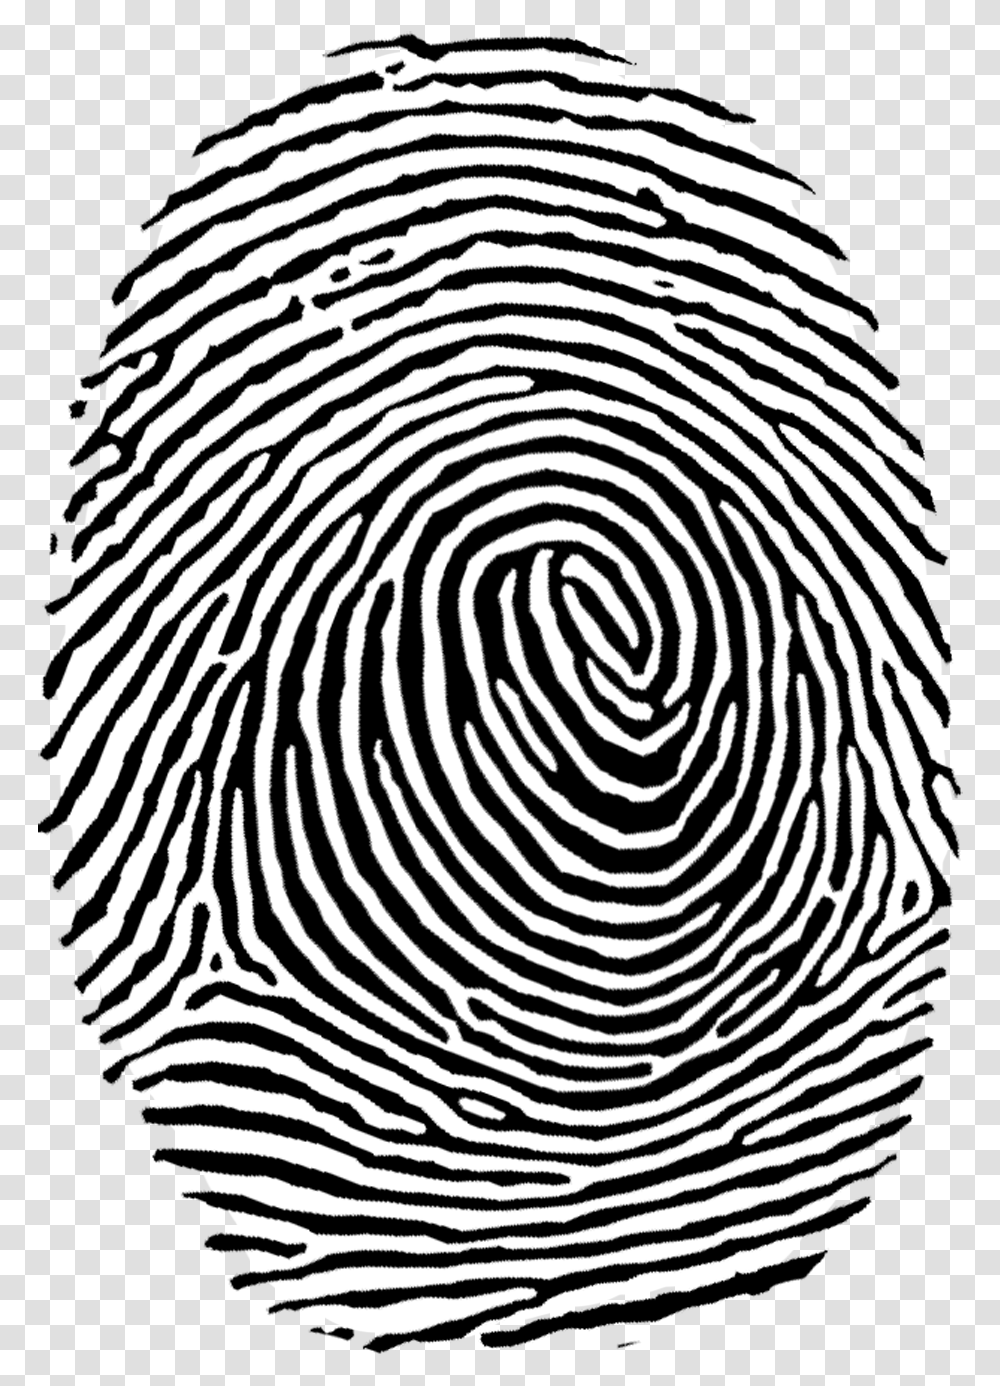 Fingerprint Image Collection Fingerprint, Rug, Spiral, Maze, Labyrinth Transparent Png